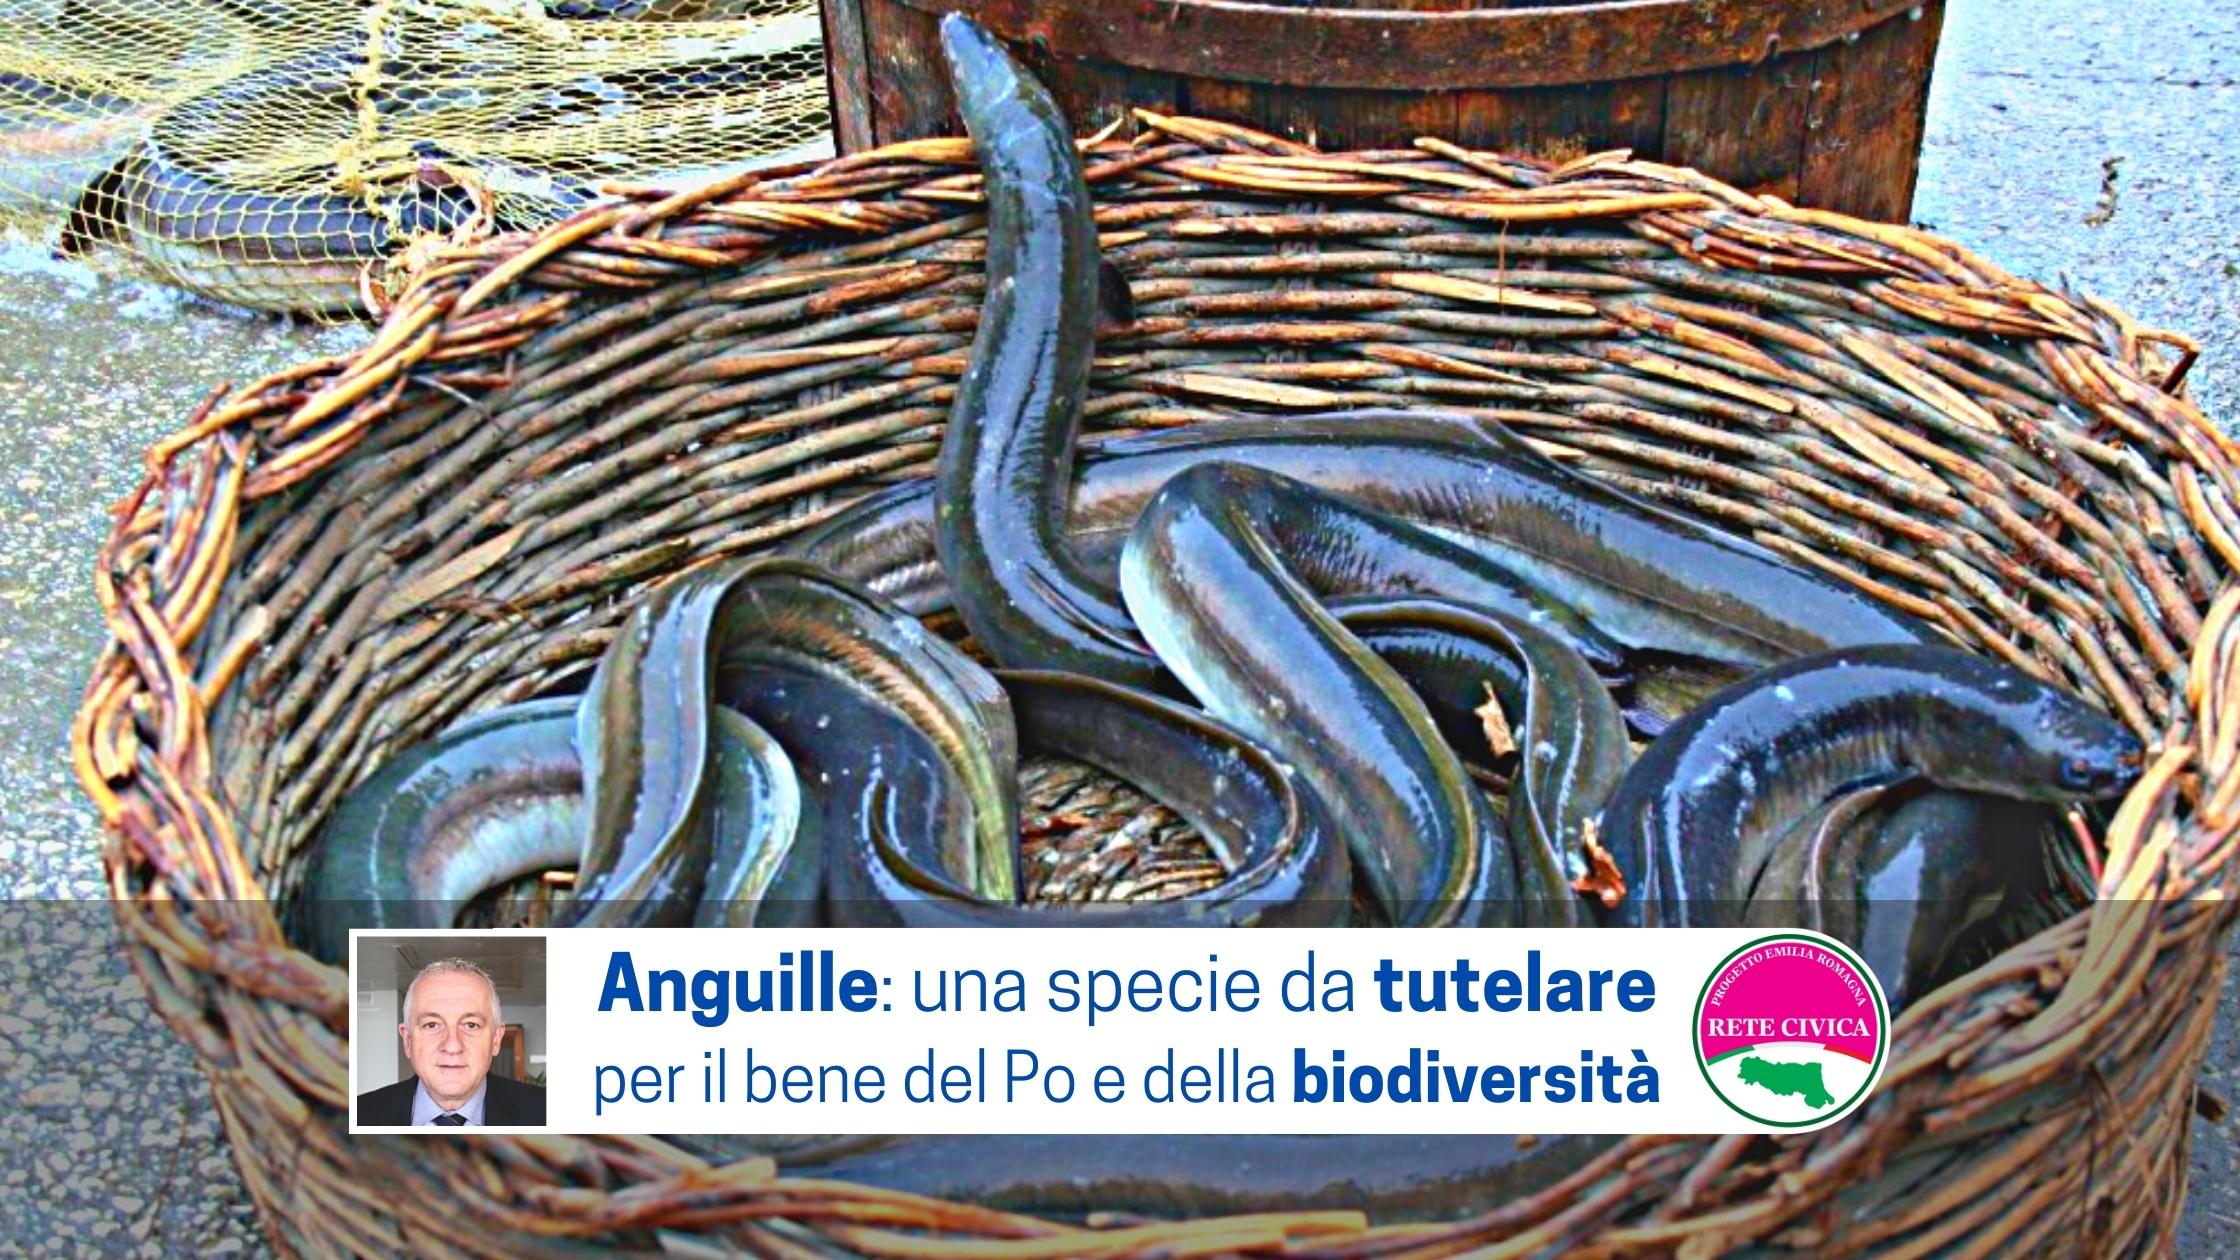 Al momento stai visualizzando Anguille: una specie da tutelare per il bene del Po e della biodiversità